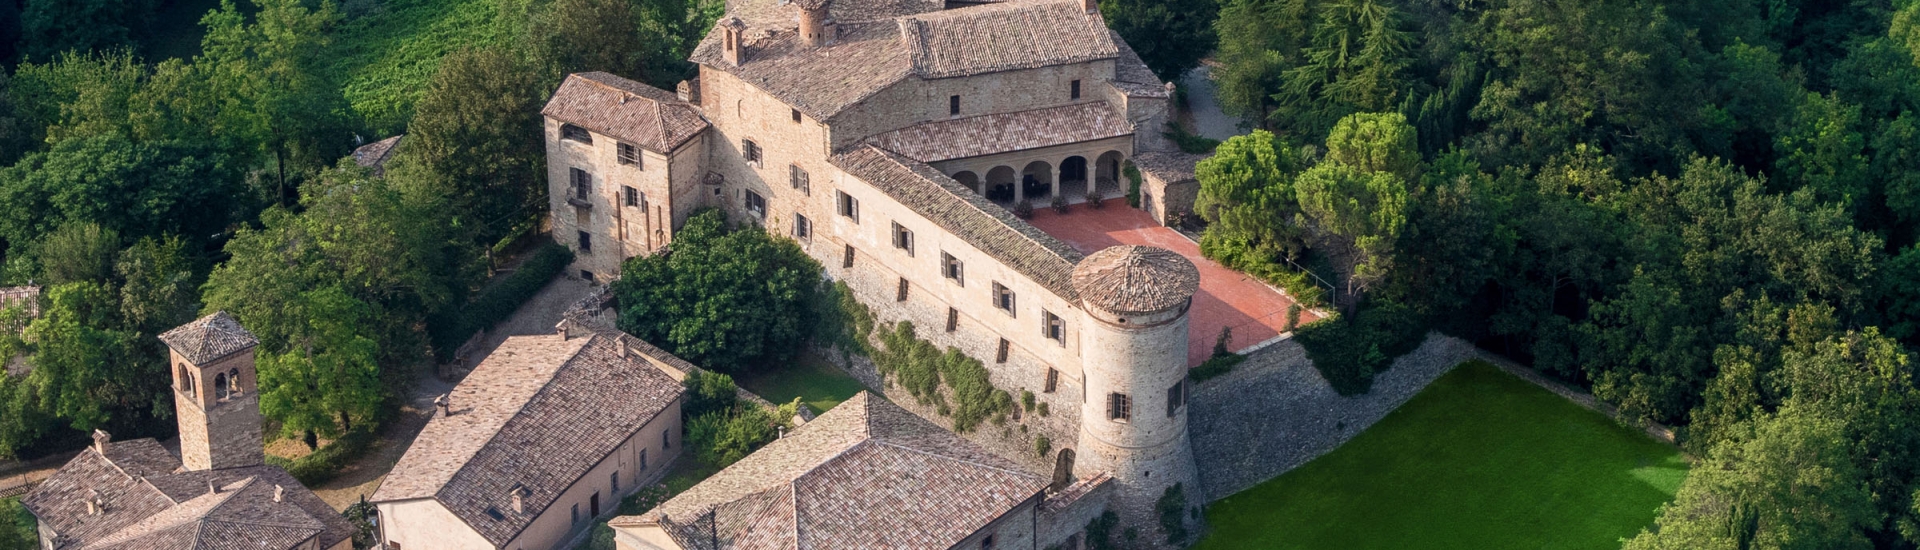 Castello di Scipione dei Marchesi Pallavicino - Panoramica Castello di Scipione photo credits: |Foto Bocelli - Castello di Scipione| - Castello di Scipione